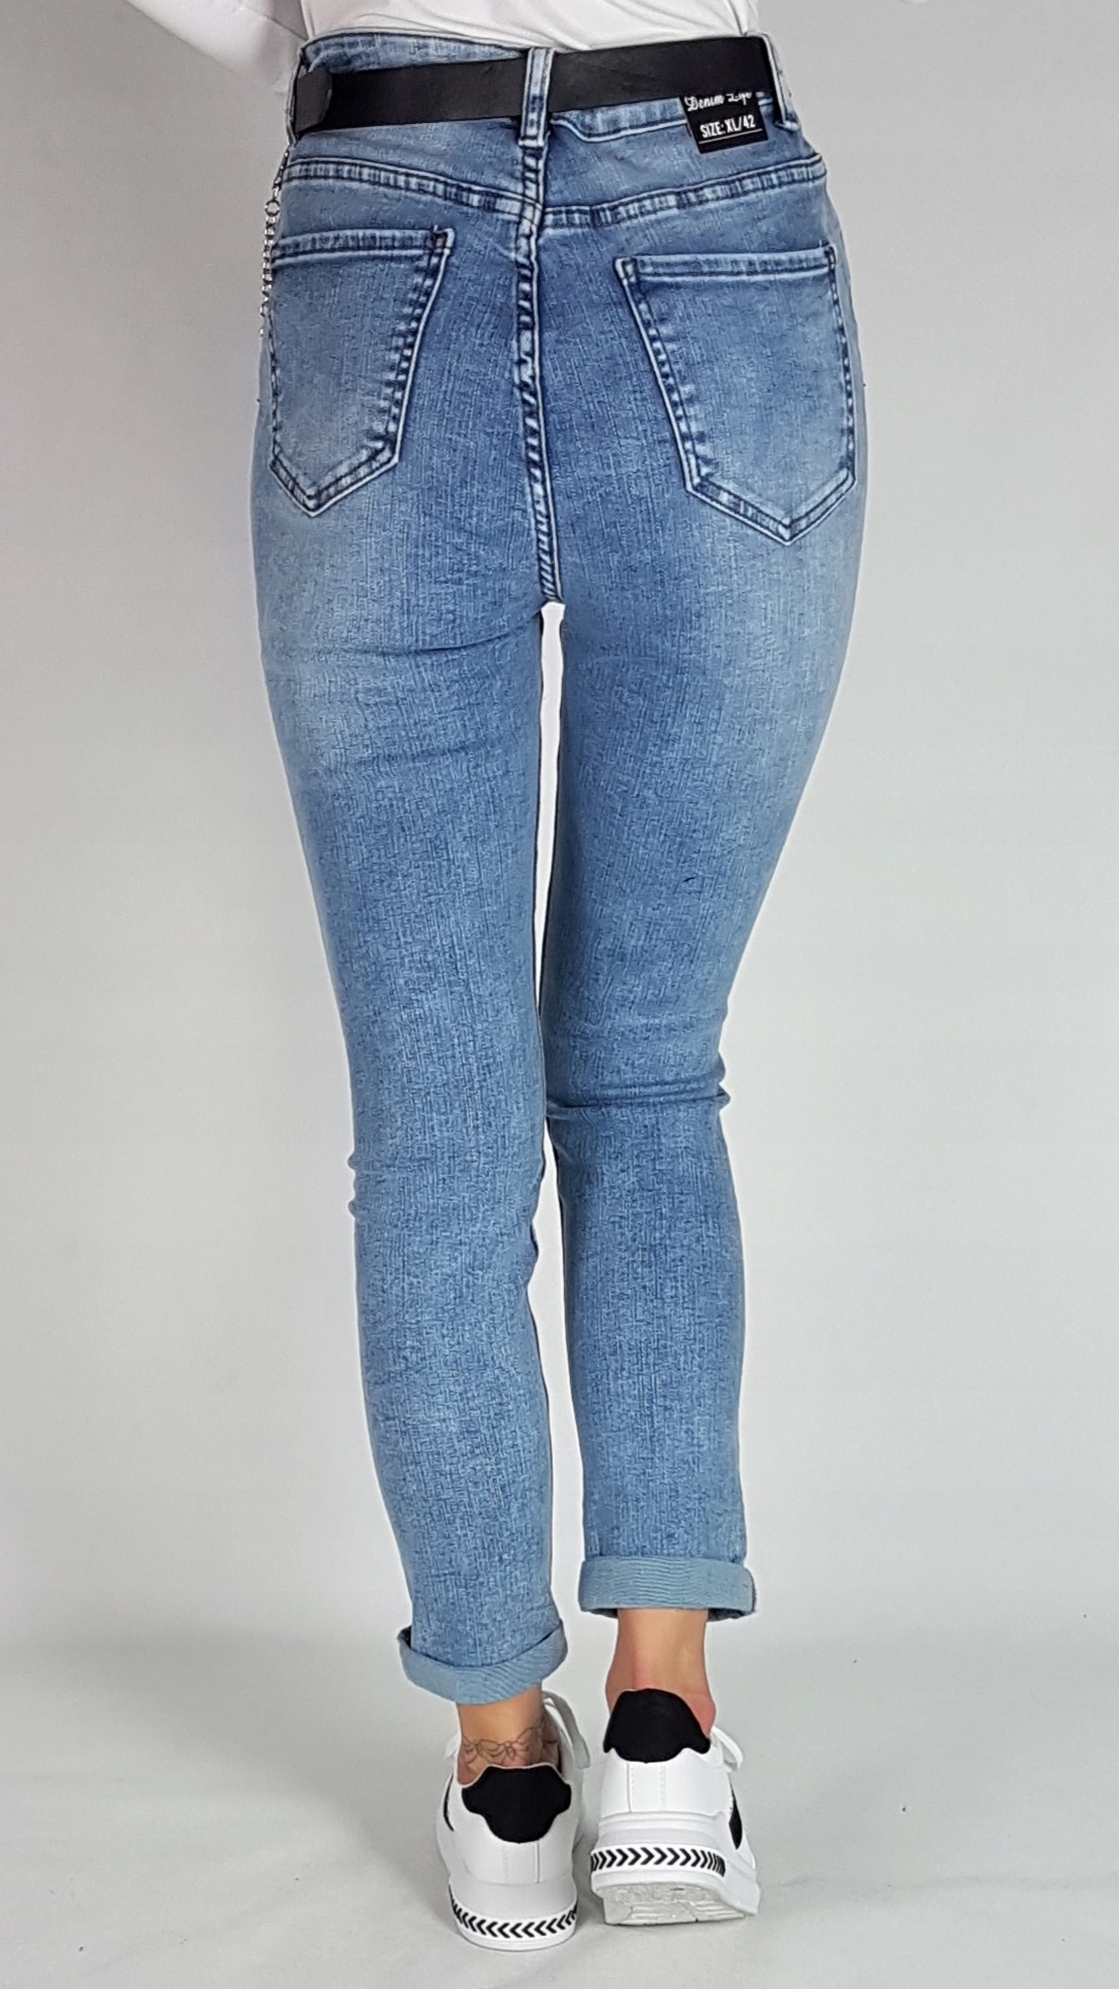 Джинсы с дырками джинсовые брюки плюс Размер 46 Cut Skinny jeans